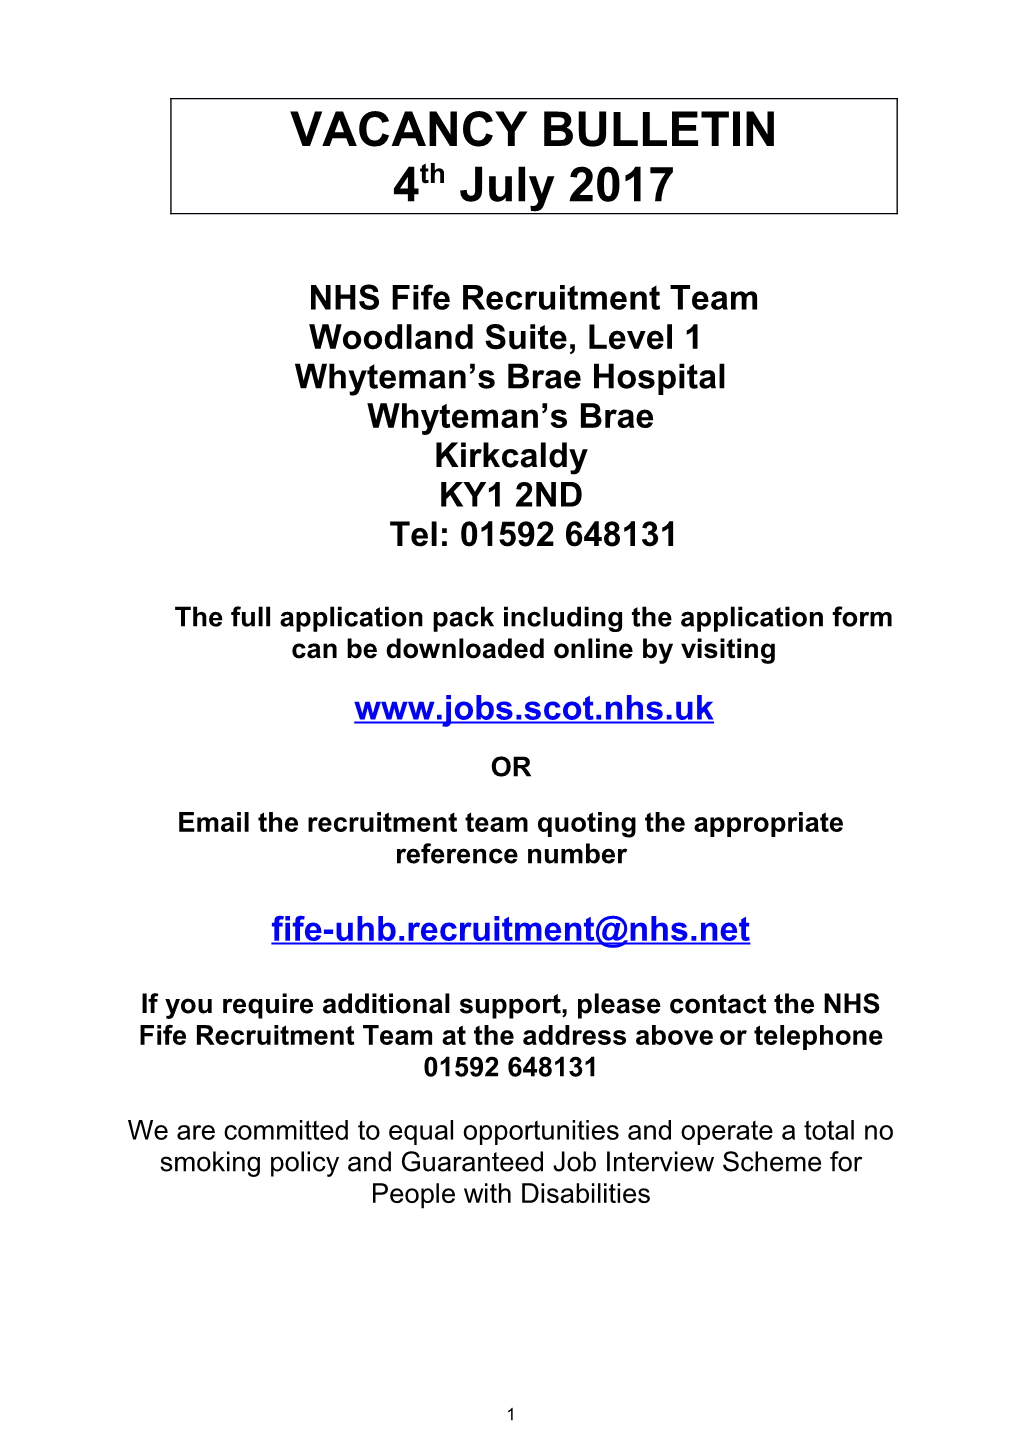 NHS Fife Recruitment Team s1